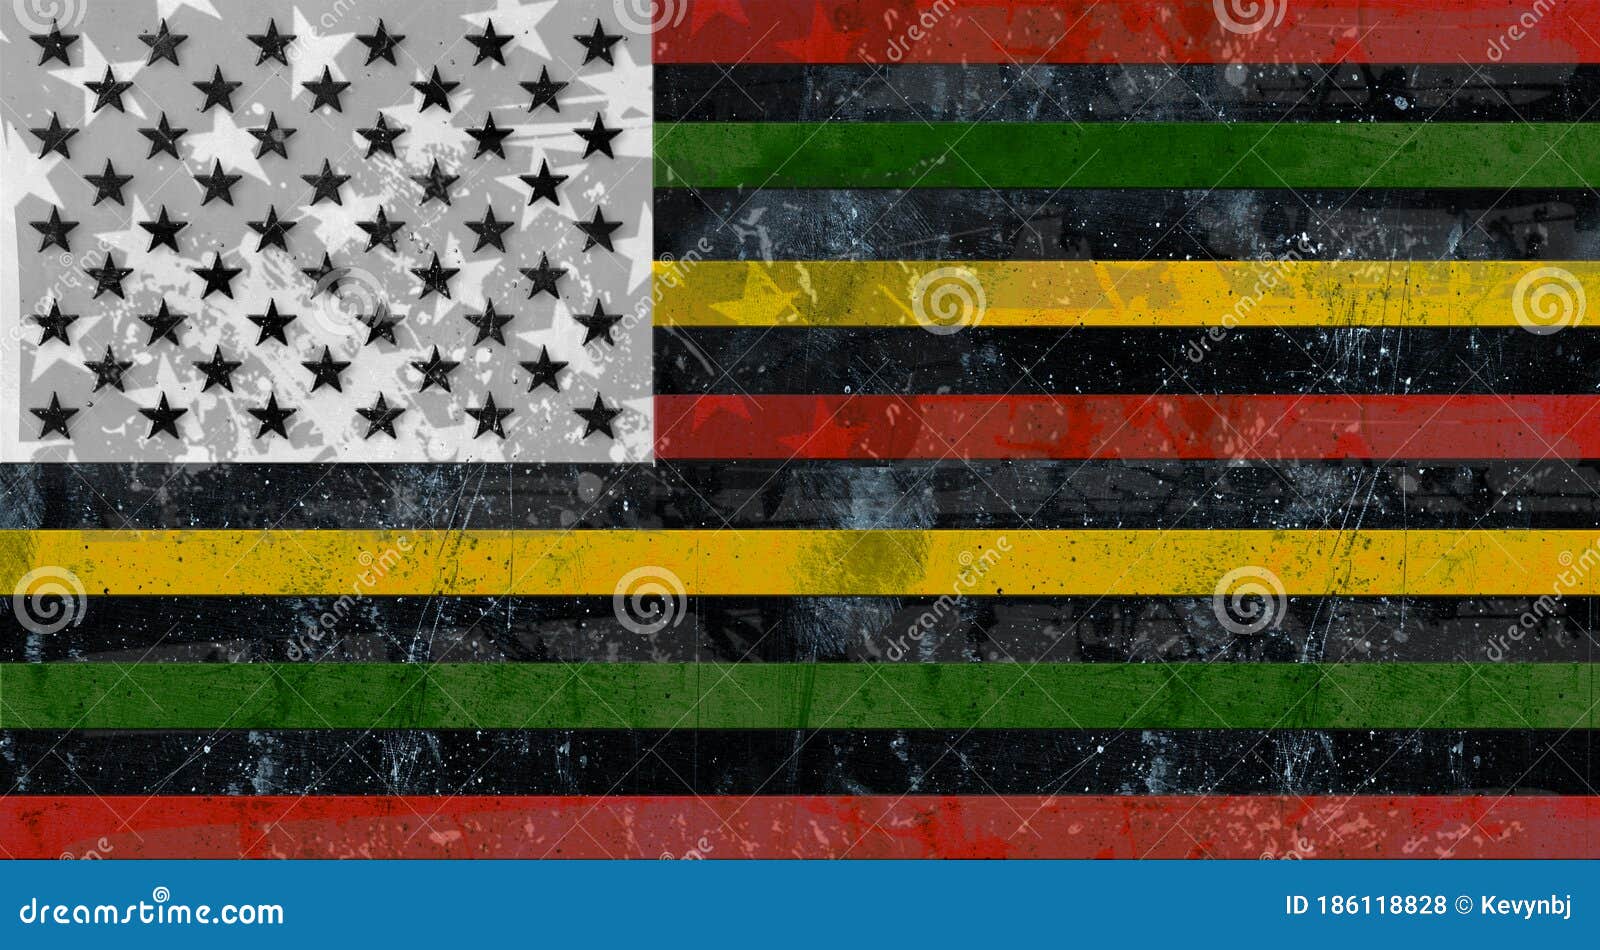 Jeg er stolt Shuraba fordøjelse Black Lives Matter Black History Month Flag Stock Photo - Image of united,  justice: 186118828